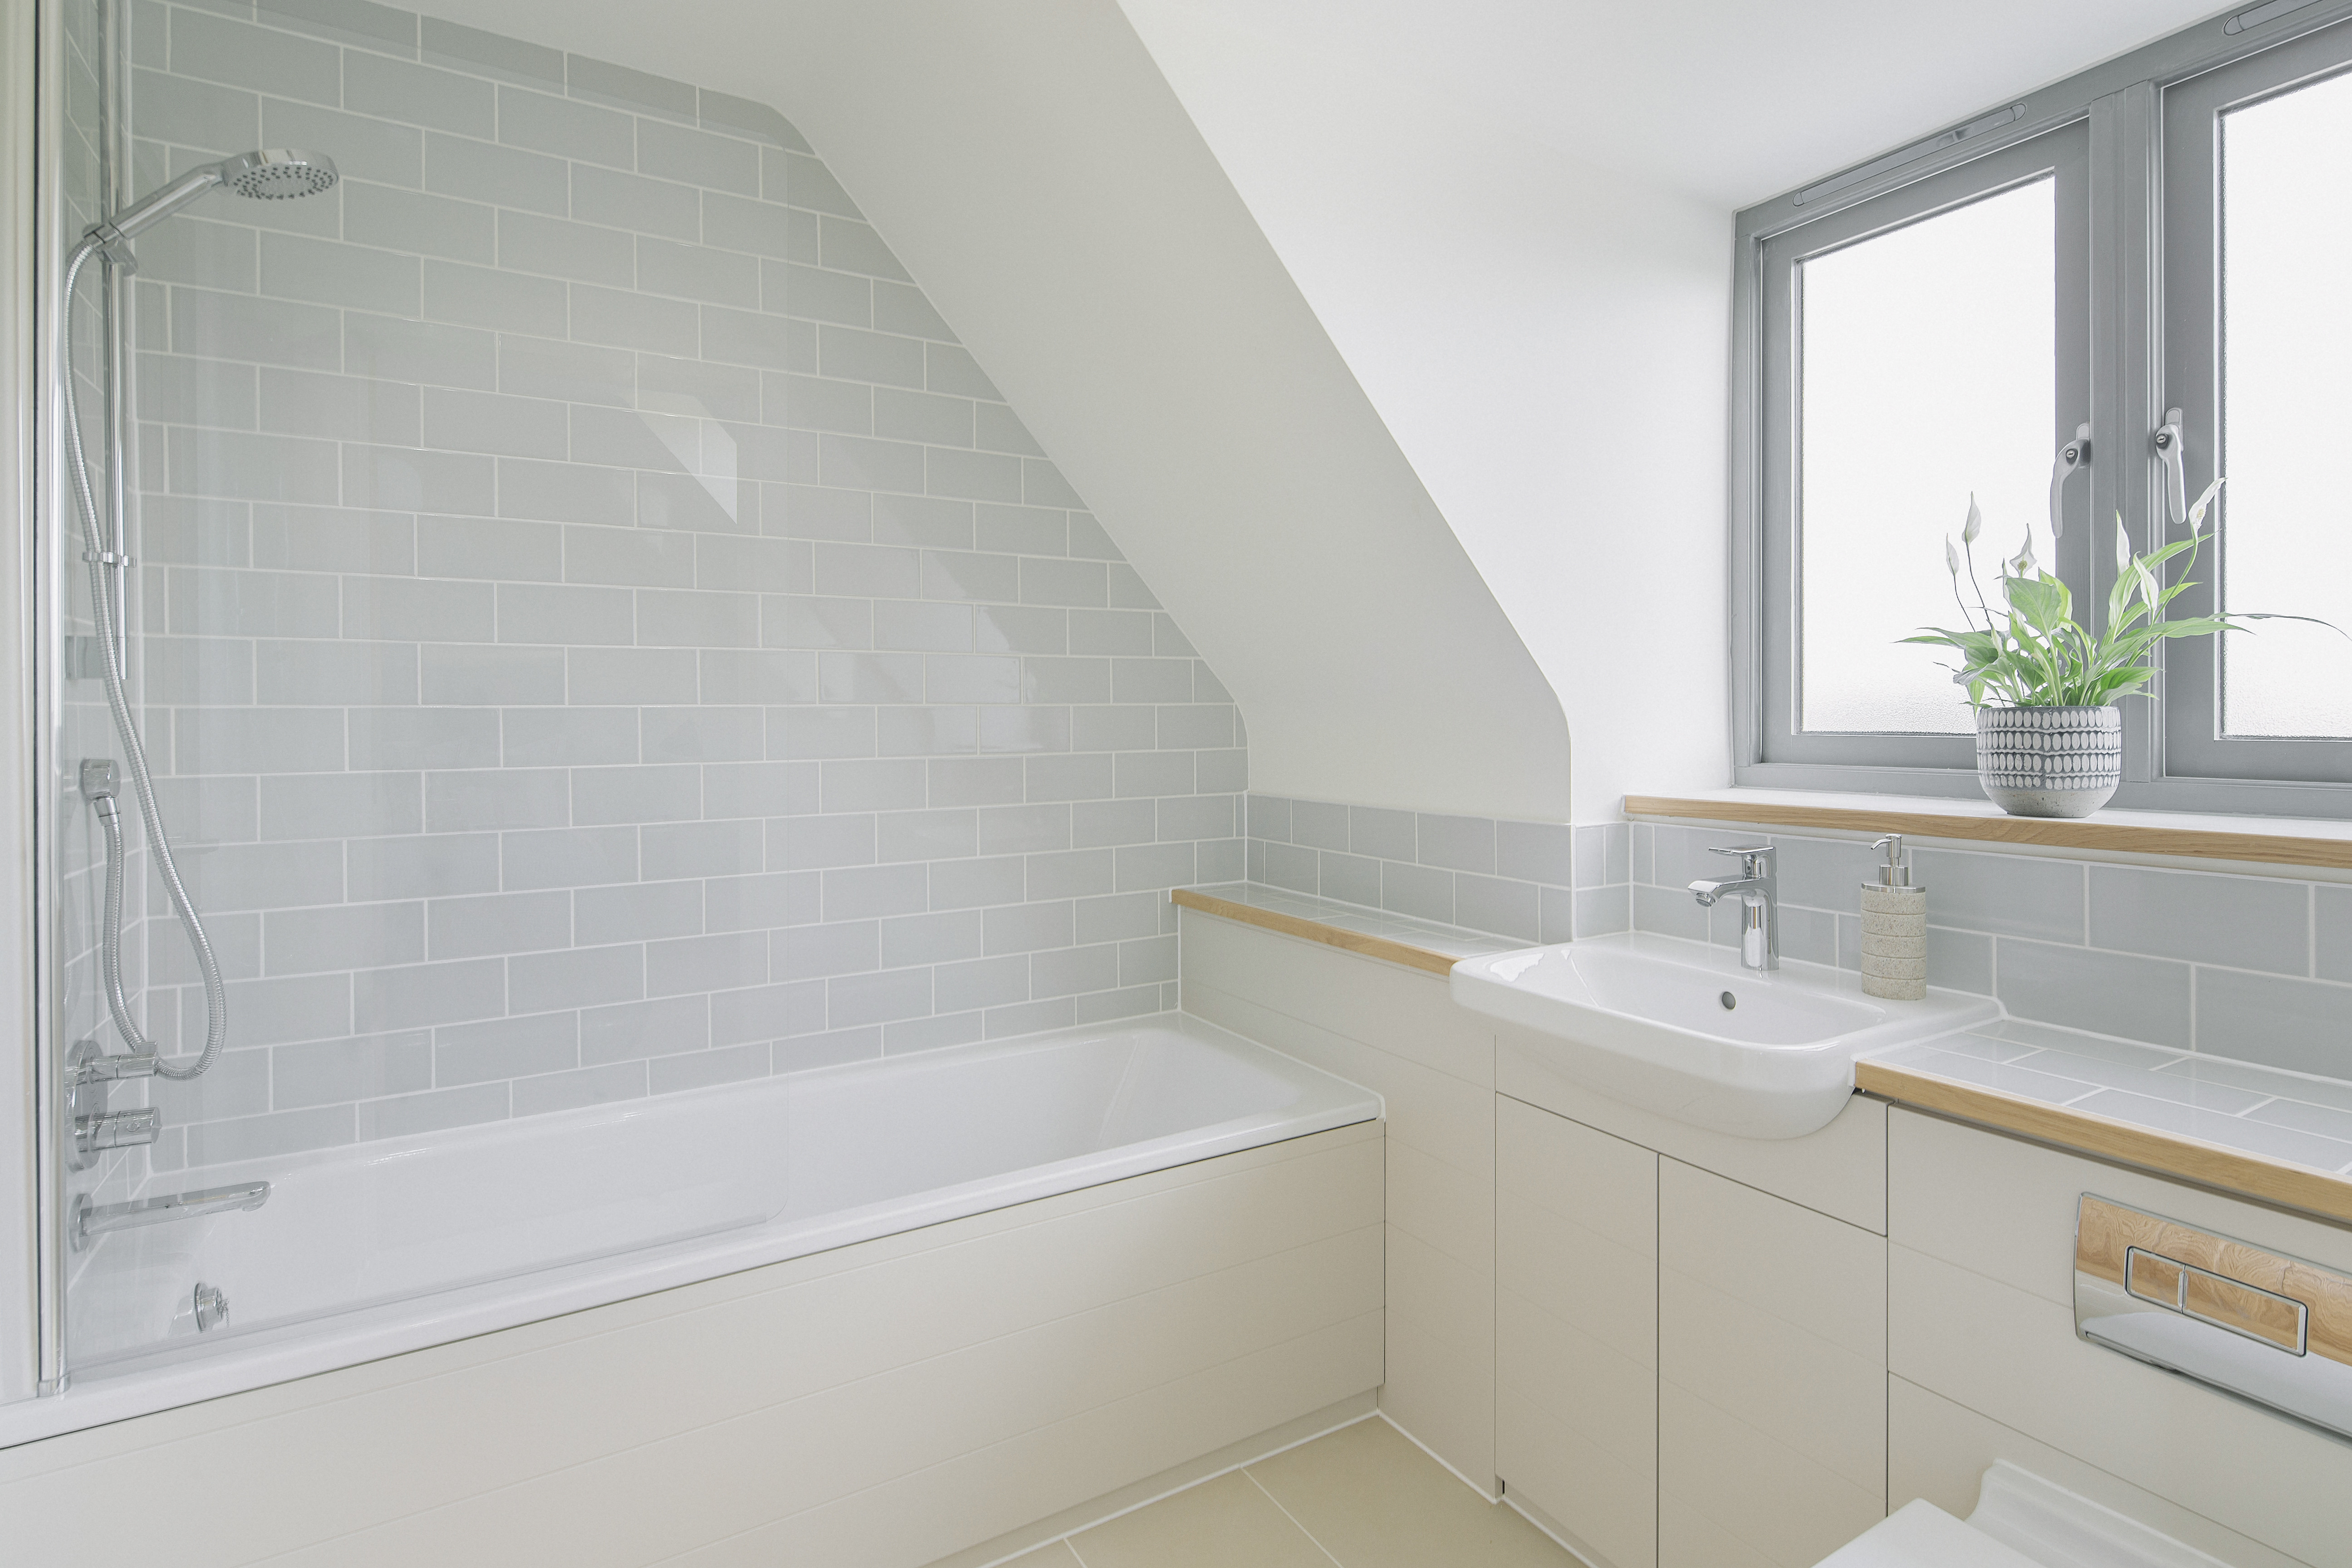 Badkamer ruimte met dakkapel, binnenaanzicht: bad & wastafel